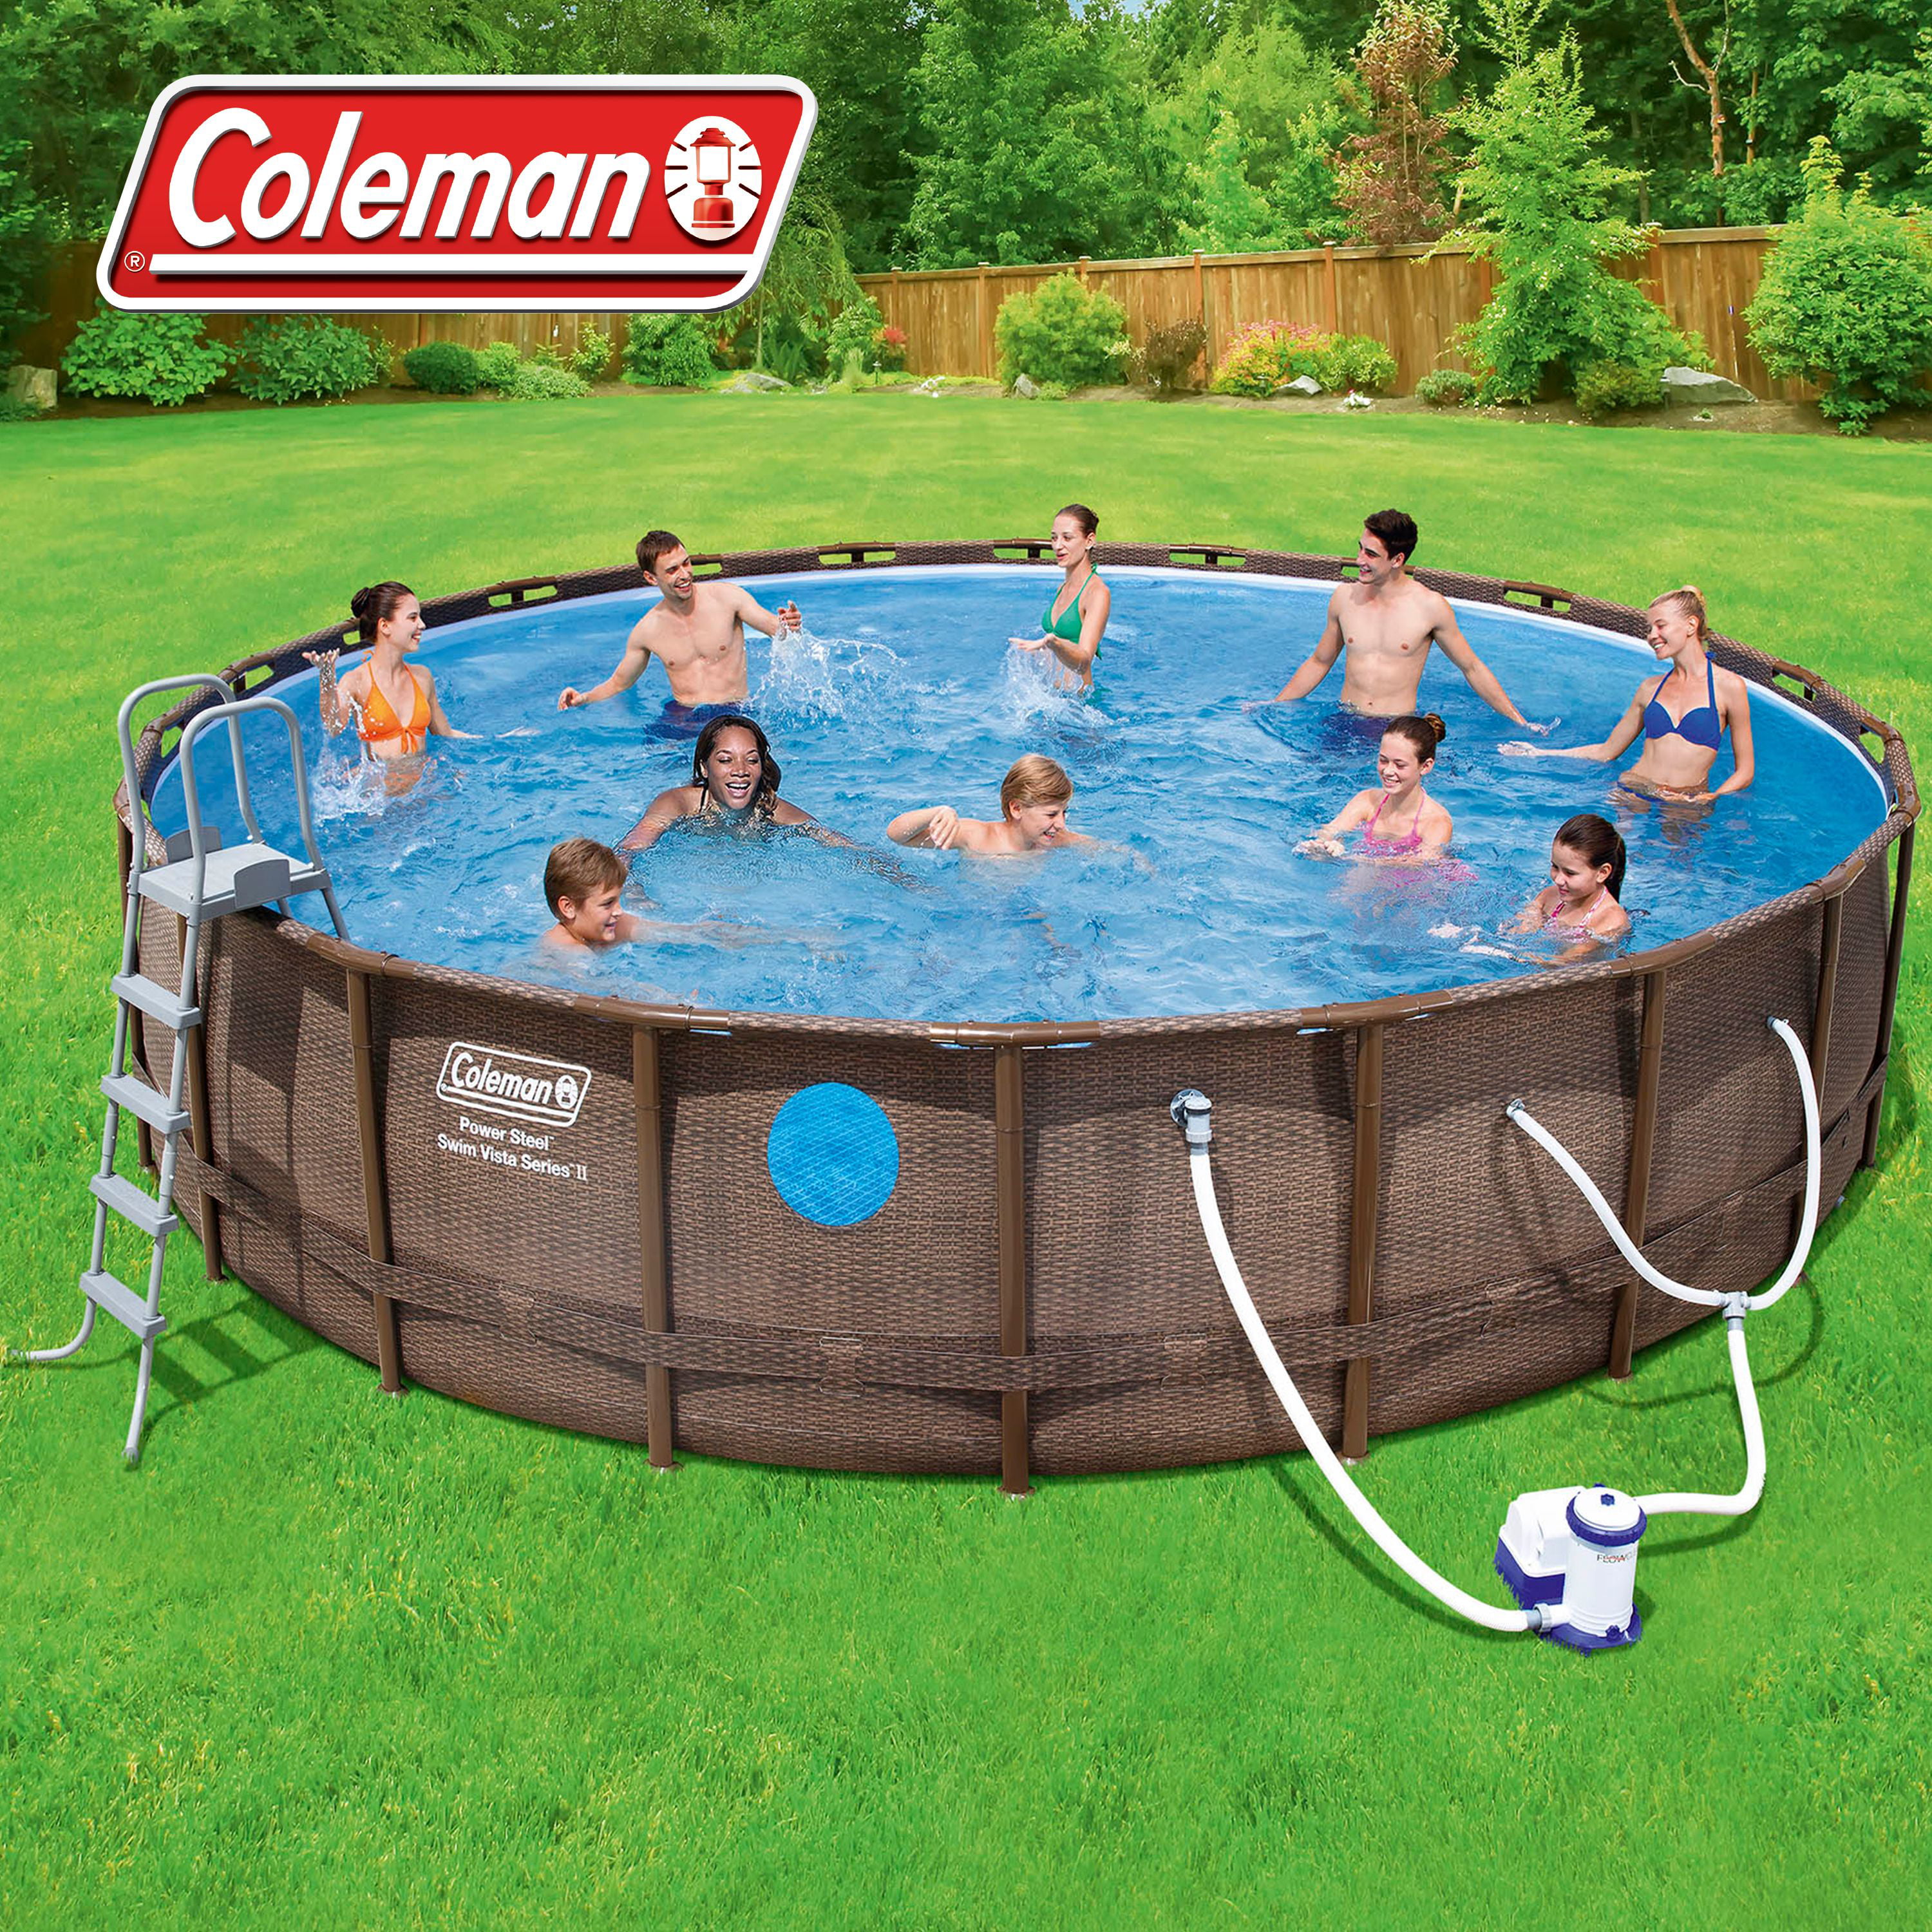 Coleman X Pool Manual